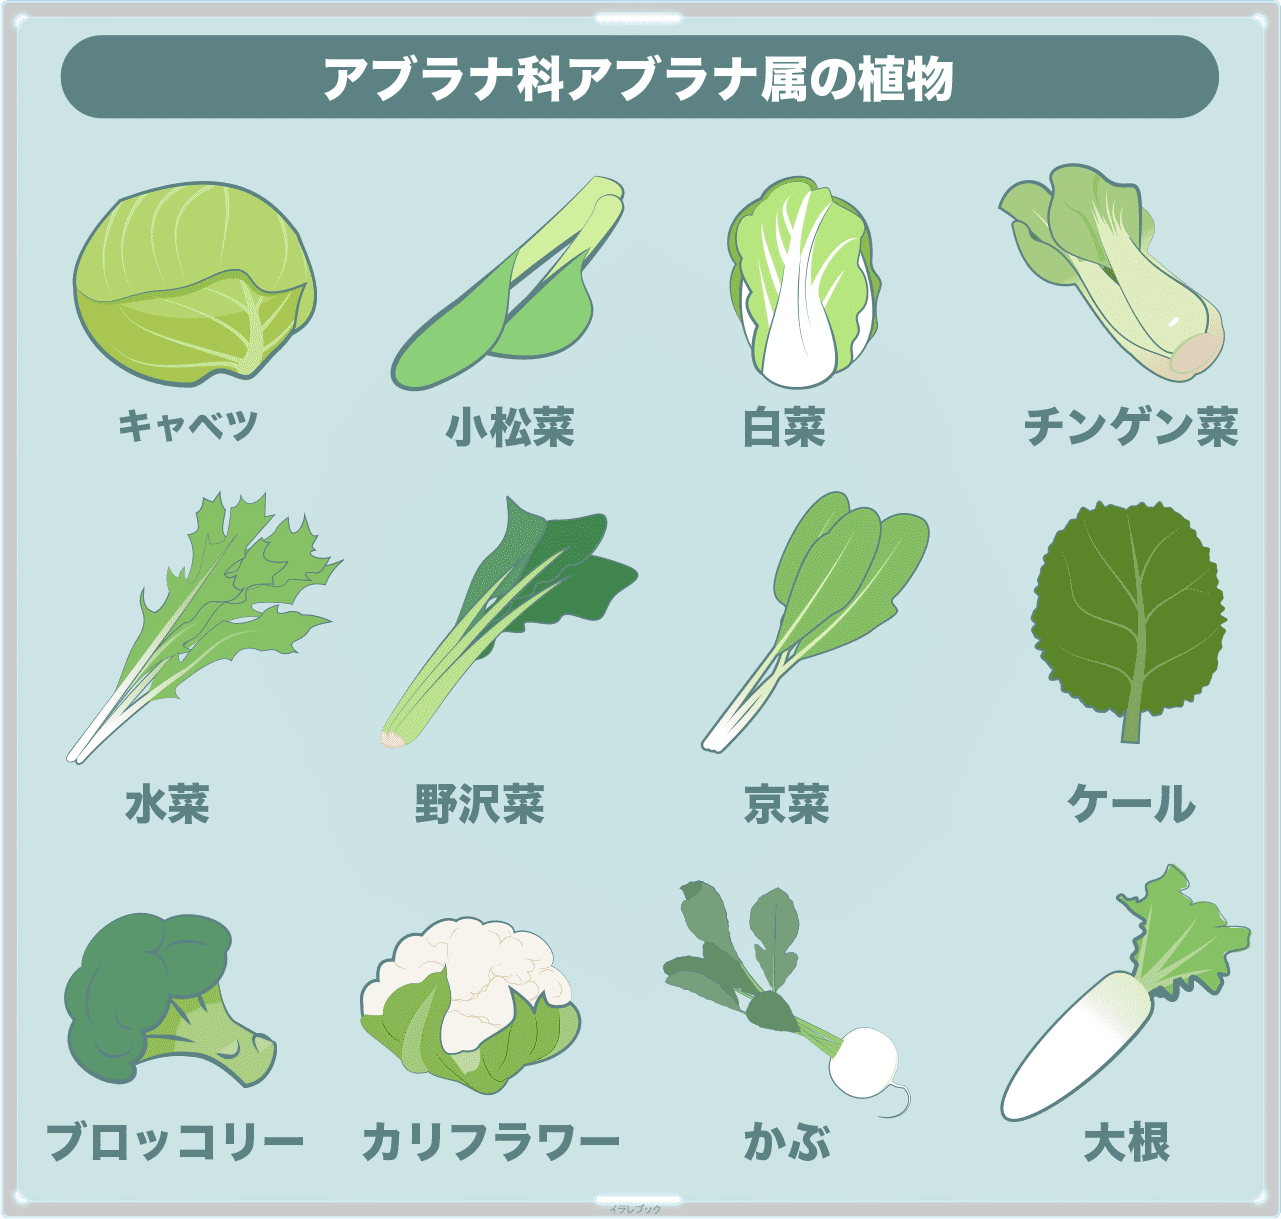 アブラナ科アブラナ属は、小松菜、白菜、青梗菜、水菜、野沢菜、京菜、ケール、ブロッコリー、カリフラワー、カブ、大根